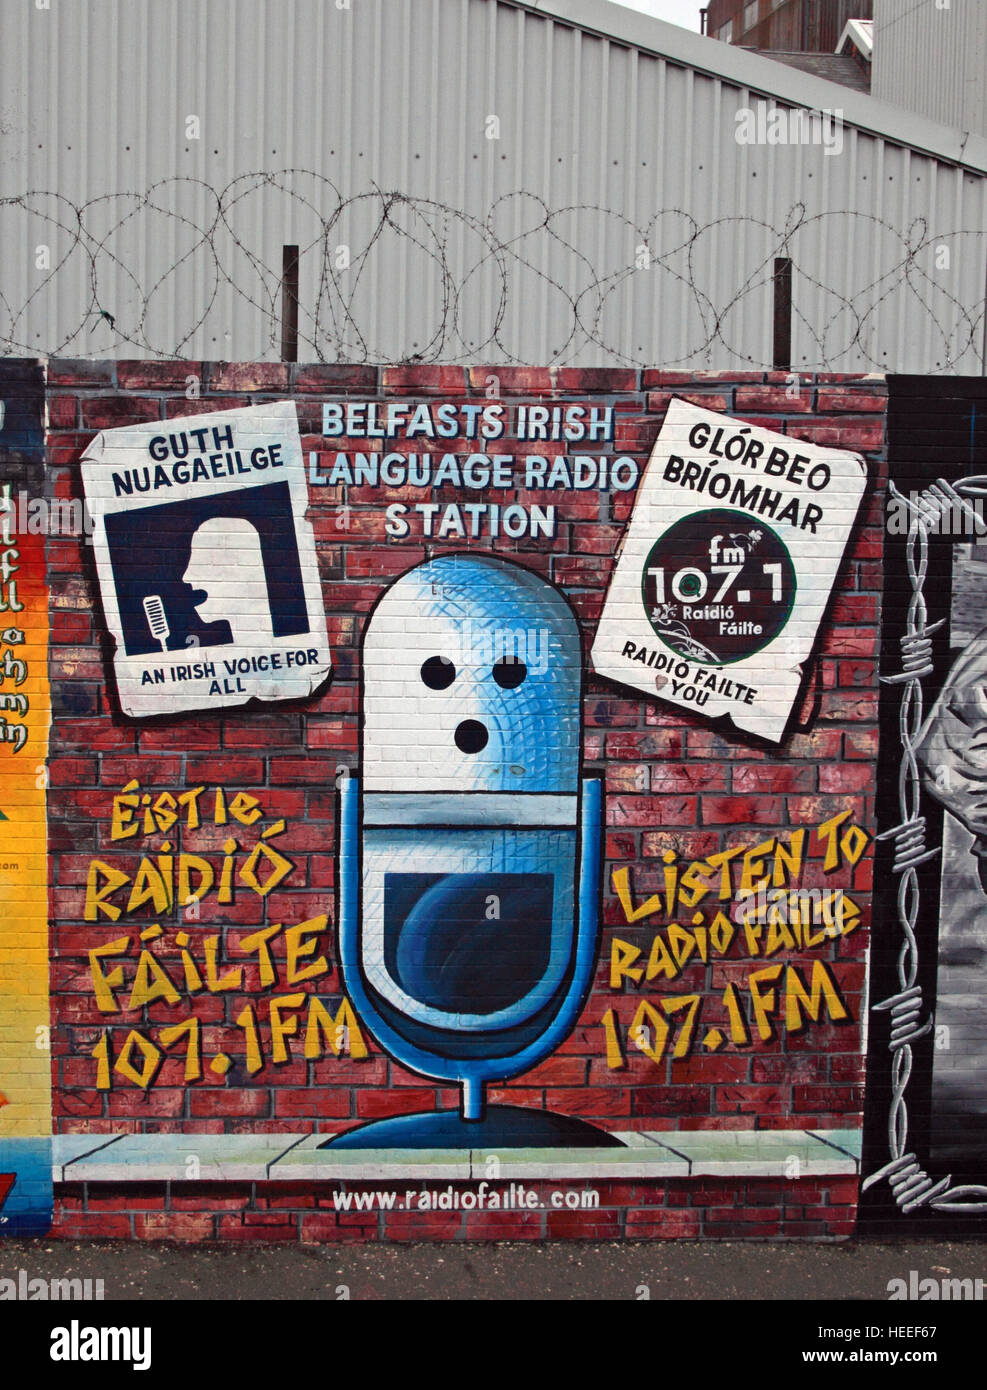 Belfast Falls Rd - radio murale républicaine Guth Nuagaeil,voix irlandais pour  tous les Radio Failte Photo Stock - Alamy